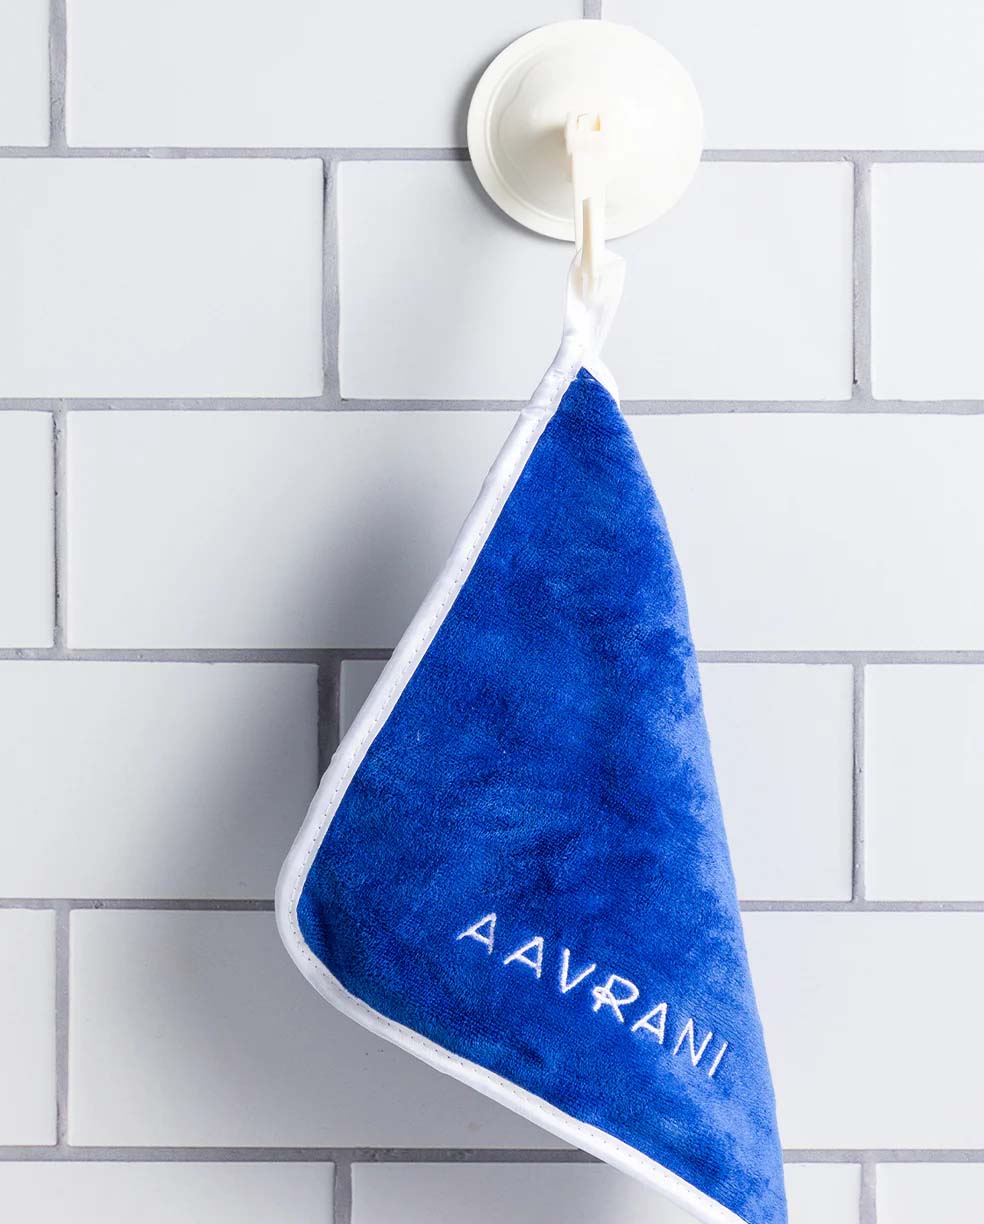 AAVRANI Face Towel Set against tile background